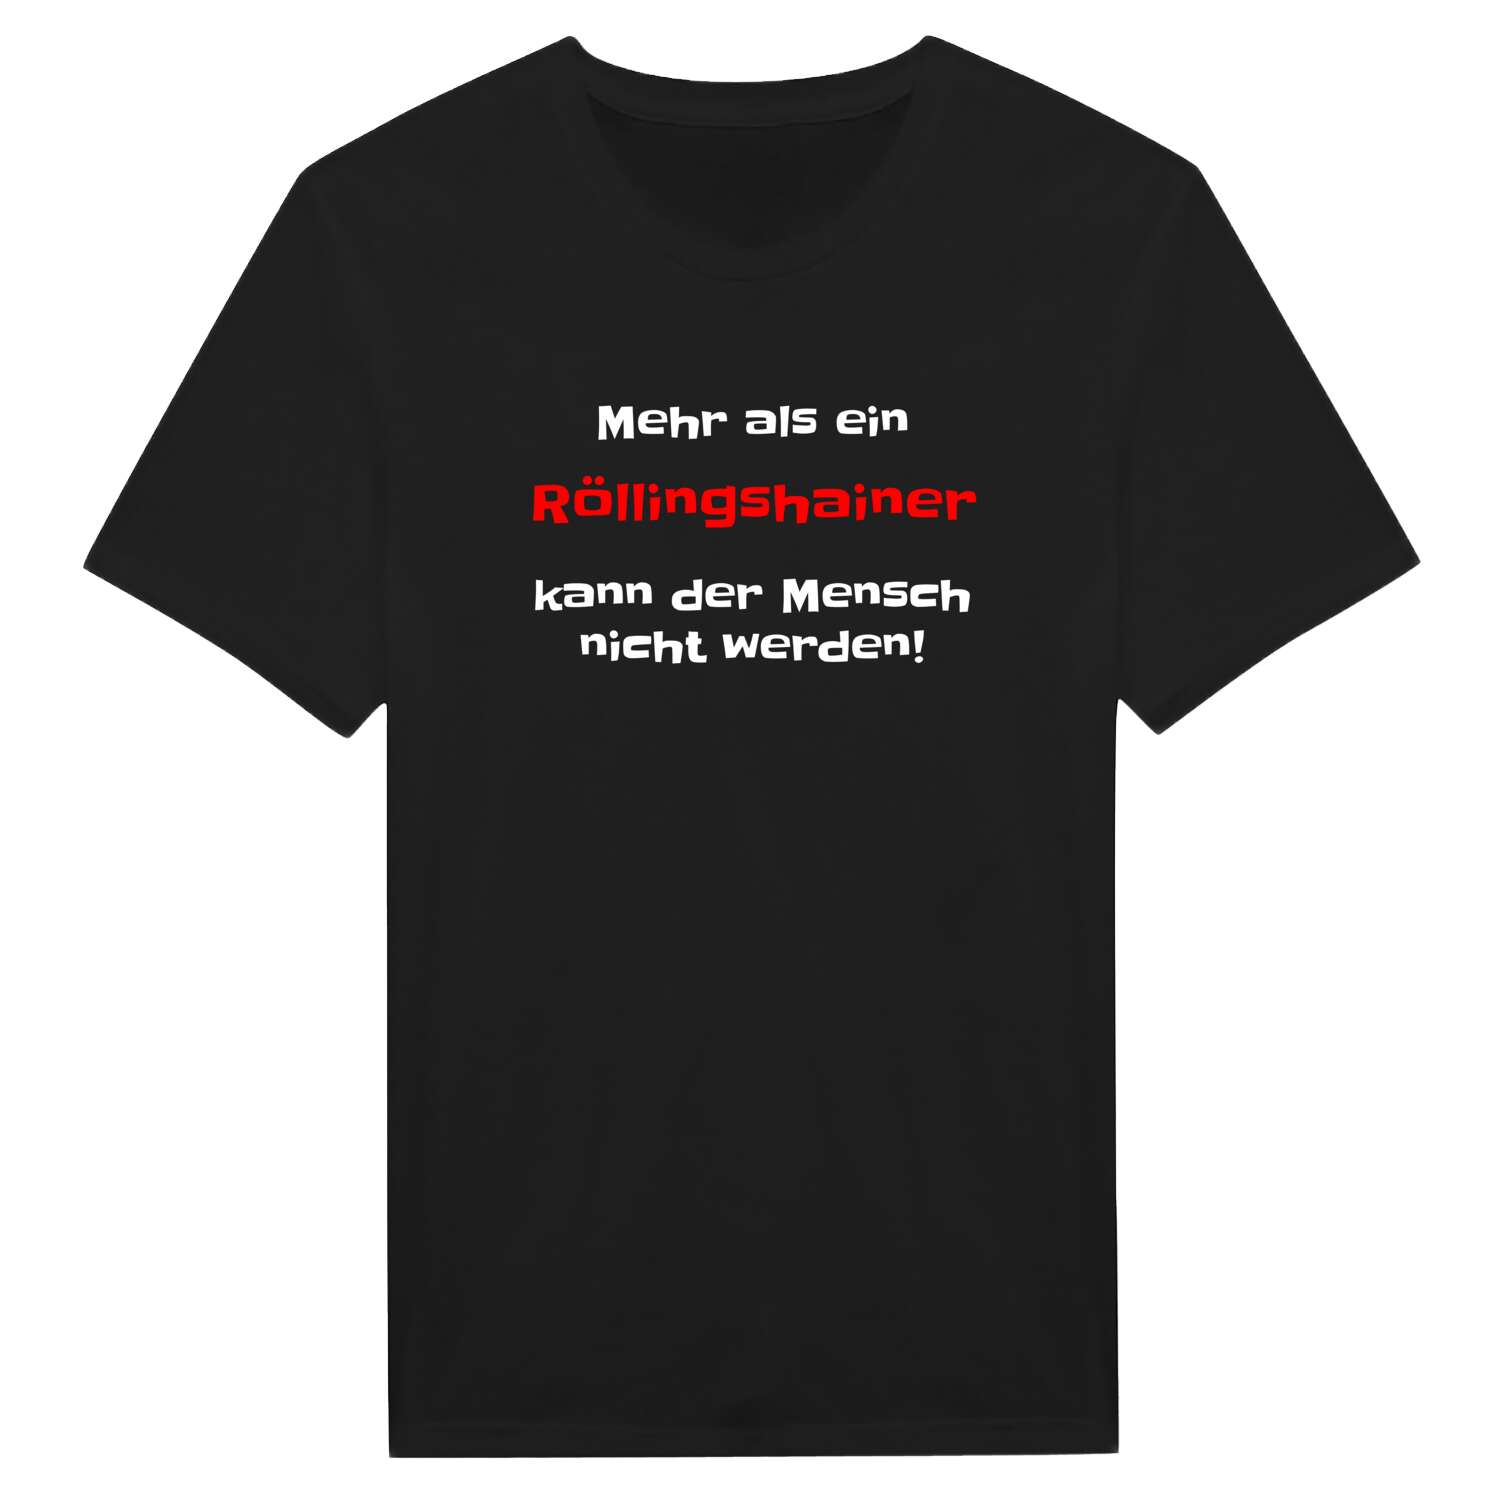 Röllingshain T-Shirt »Mehr als ein«